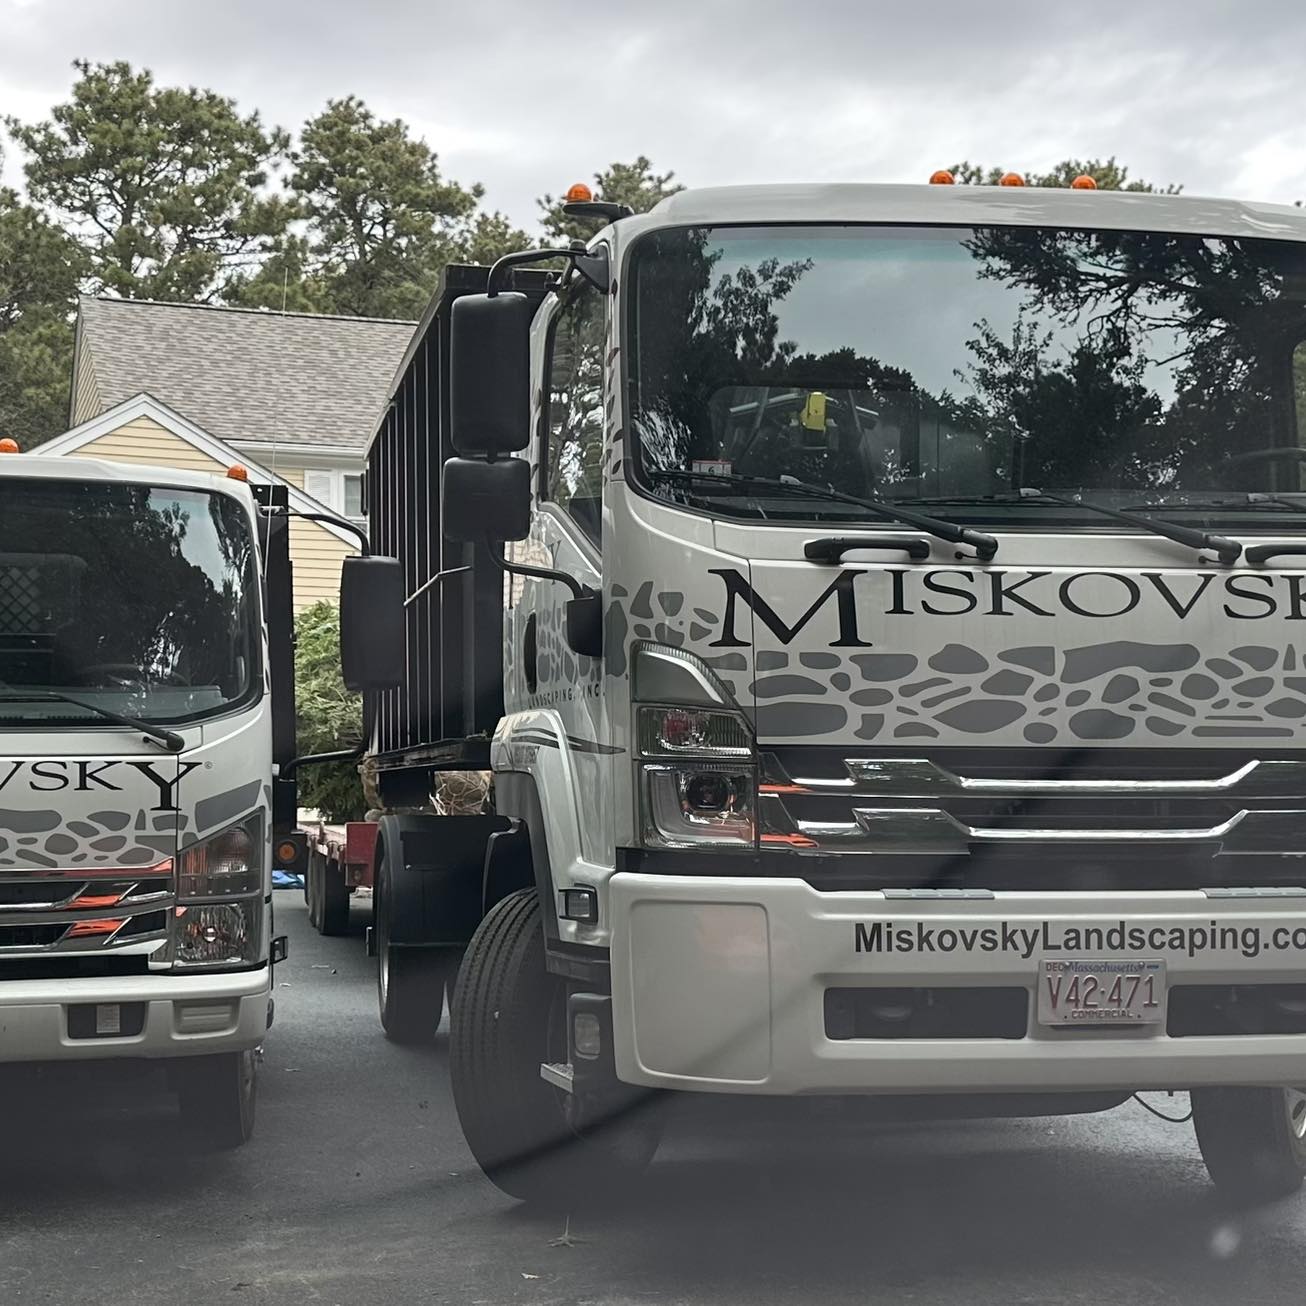 Miskovsky Landscaping Inc